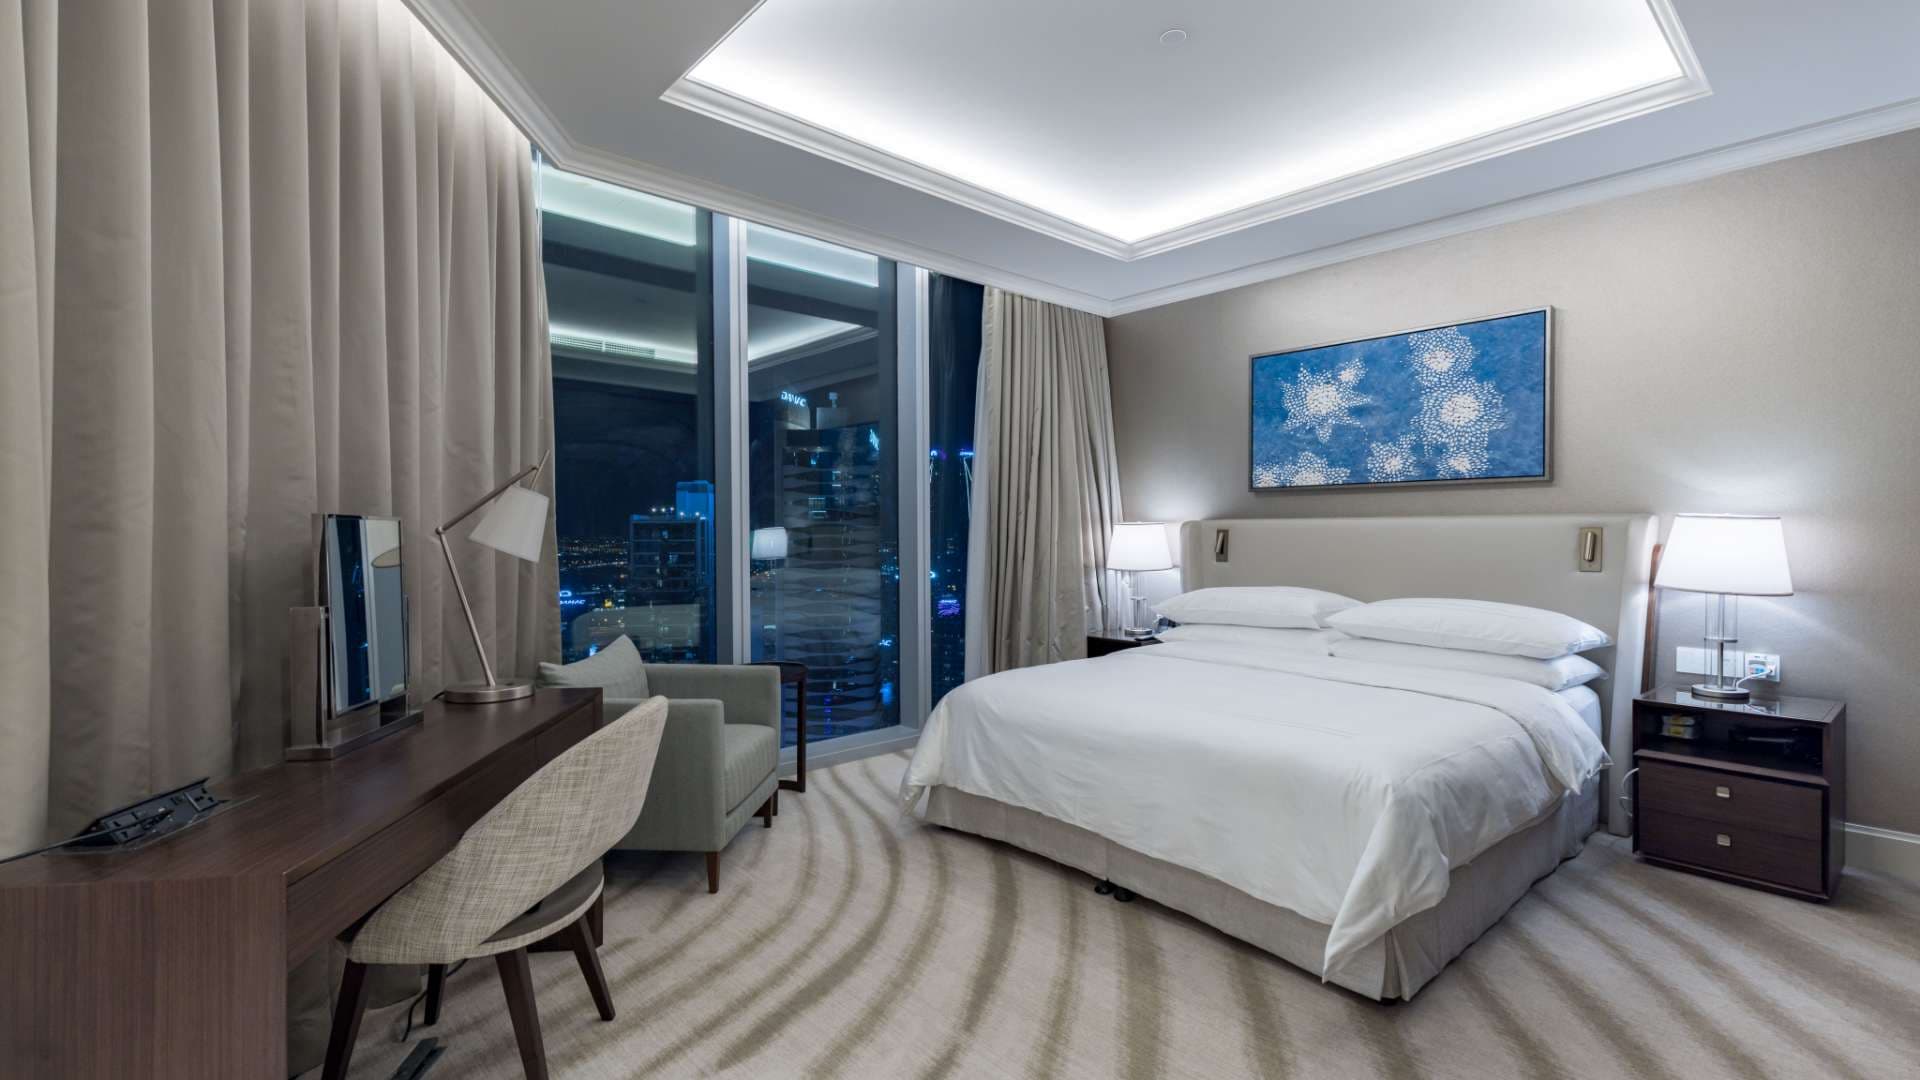 2 Bedroom Apartment For Rent Burj Khalifa Area Lp10253 25a0a808b89a1400.jpg